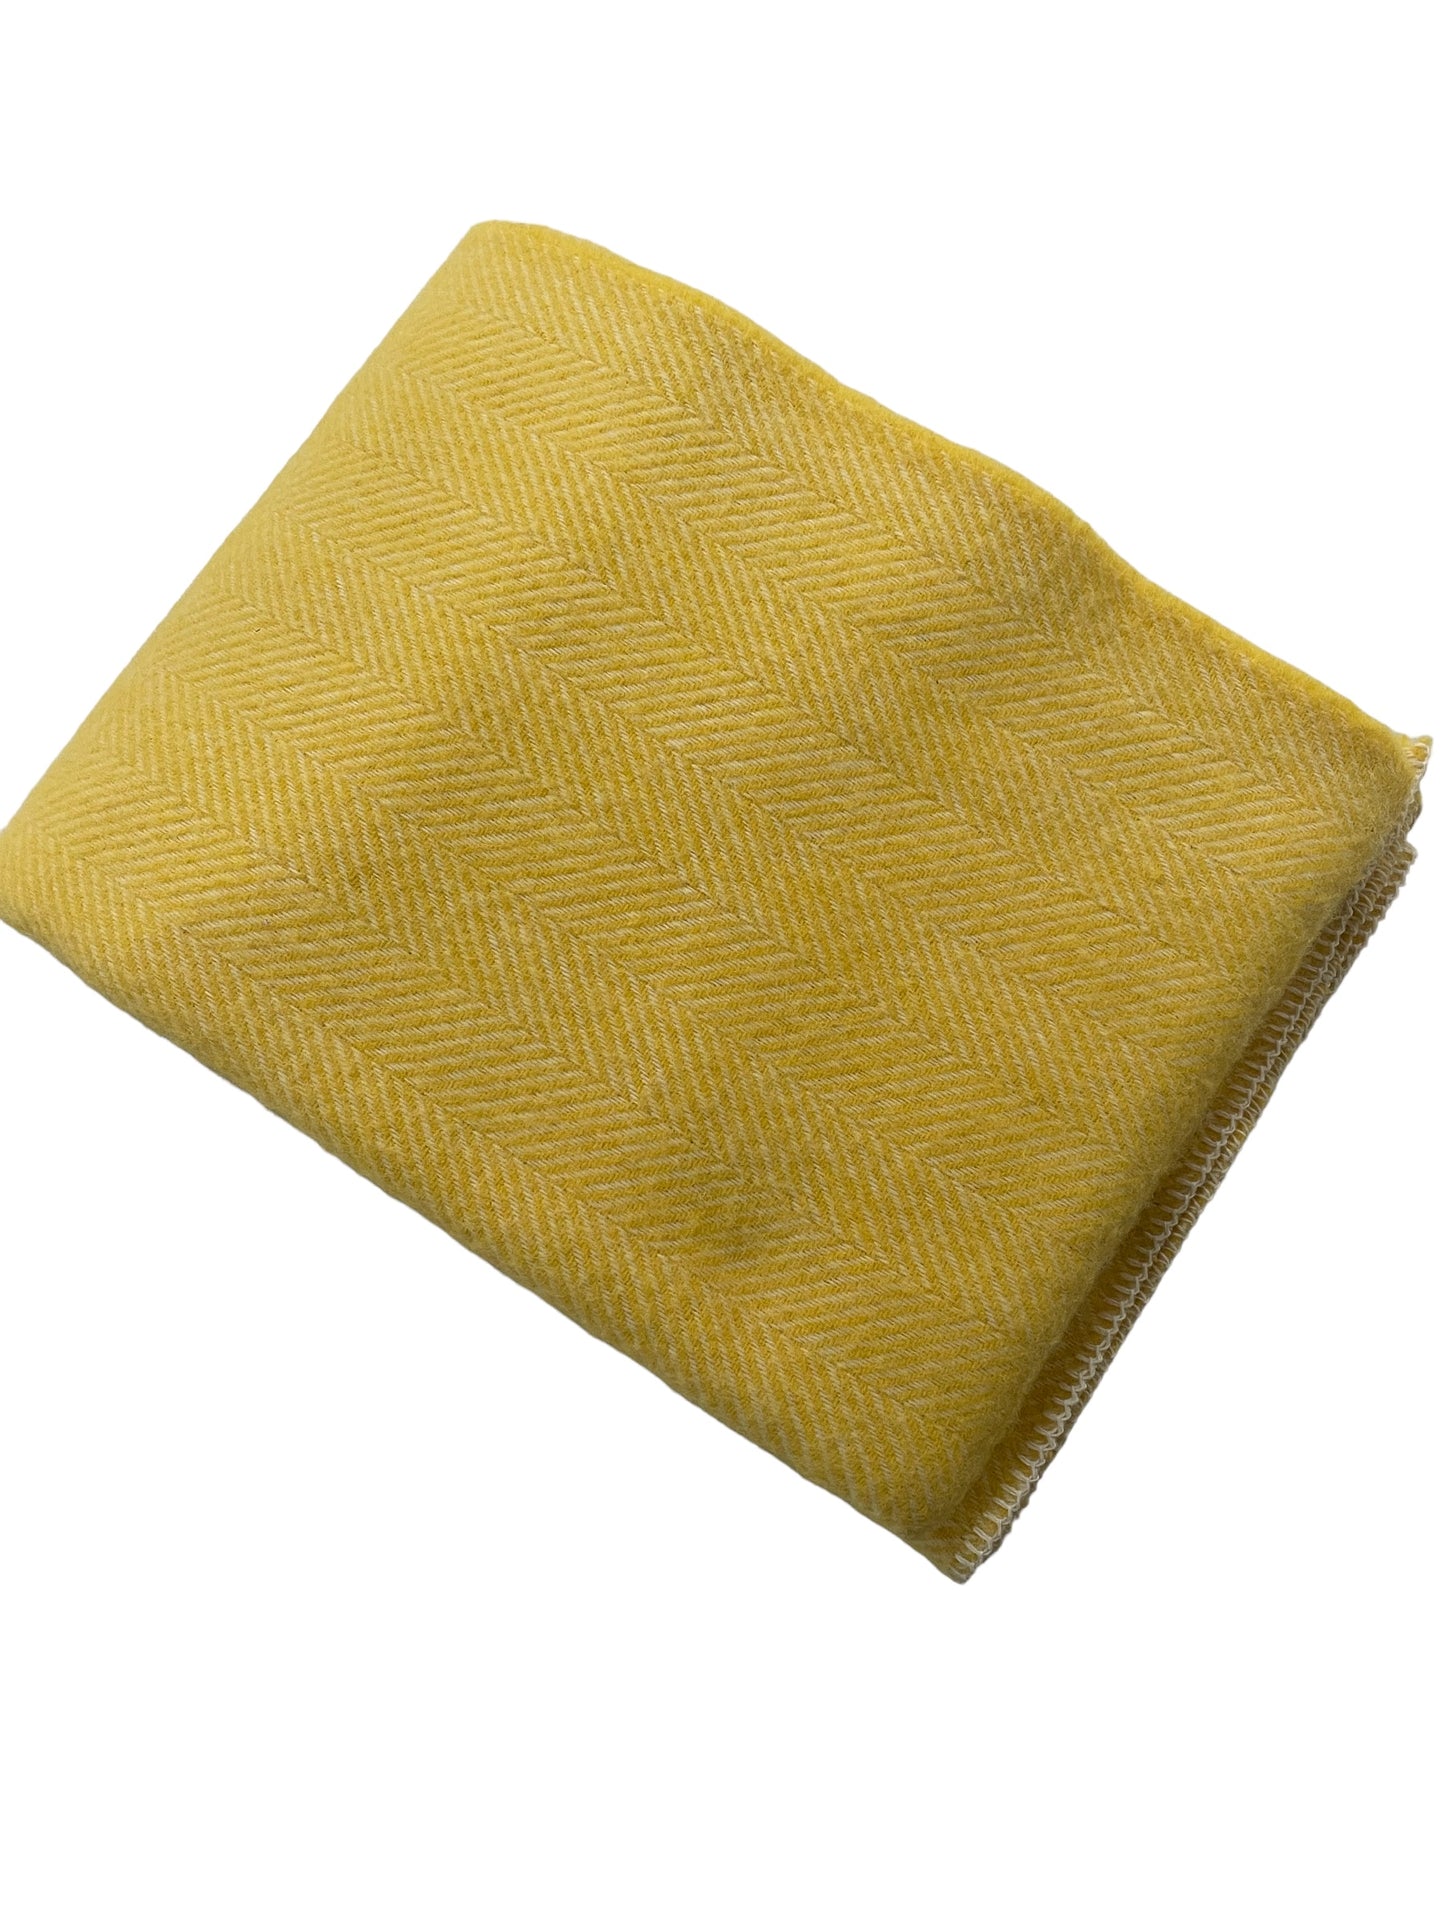 Dandelion Yellow Herringbone Wool Throw